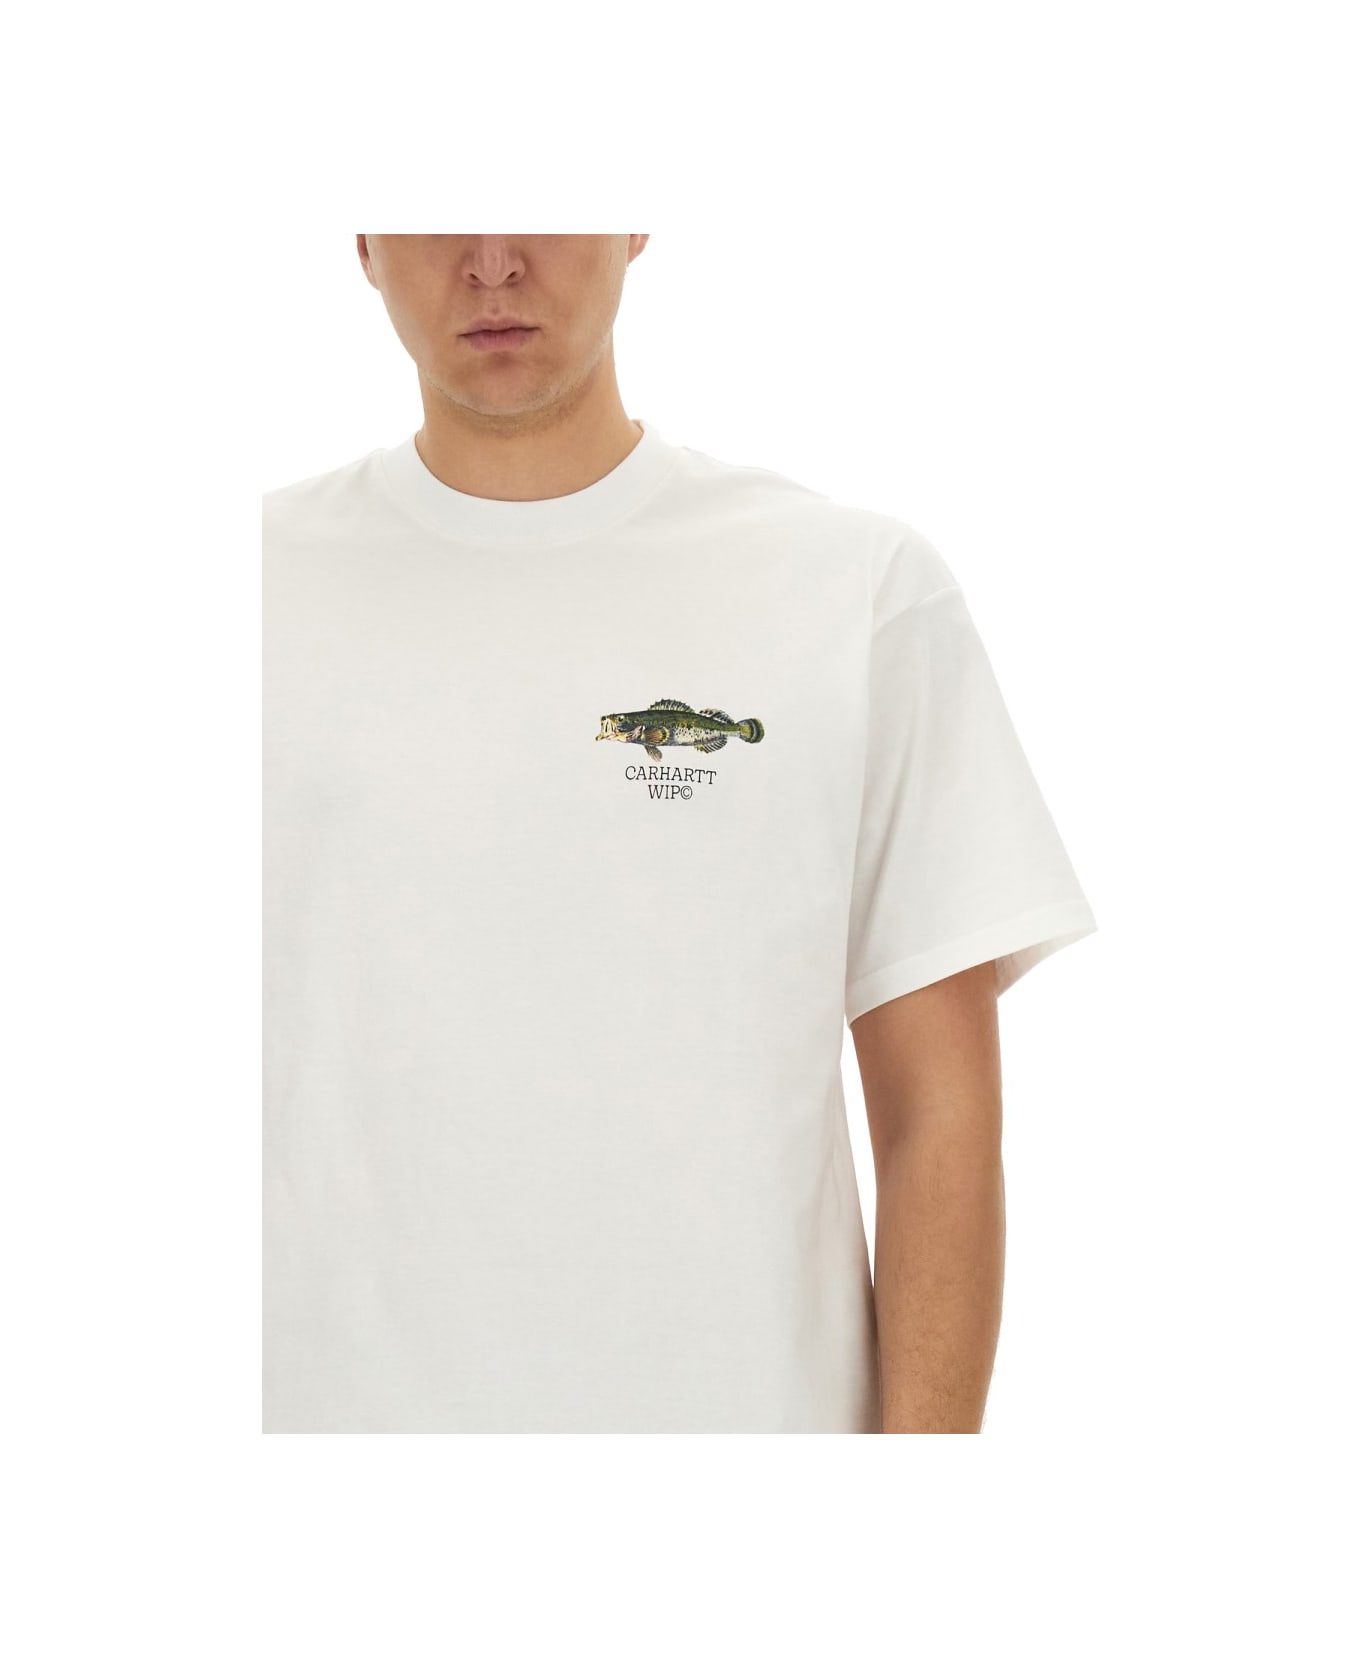 Carhartt WIP T-shirt 'fish' - White